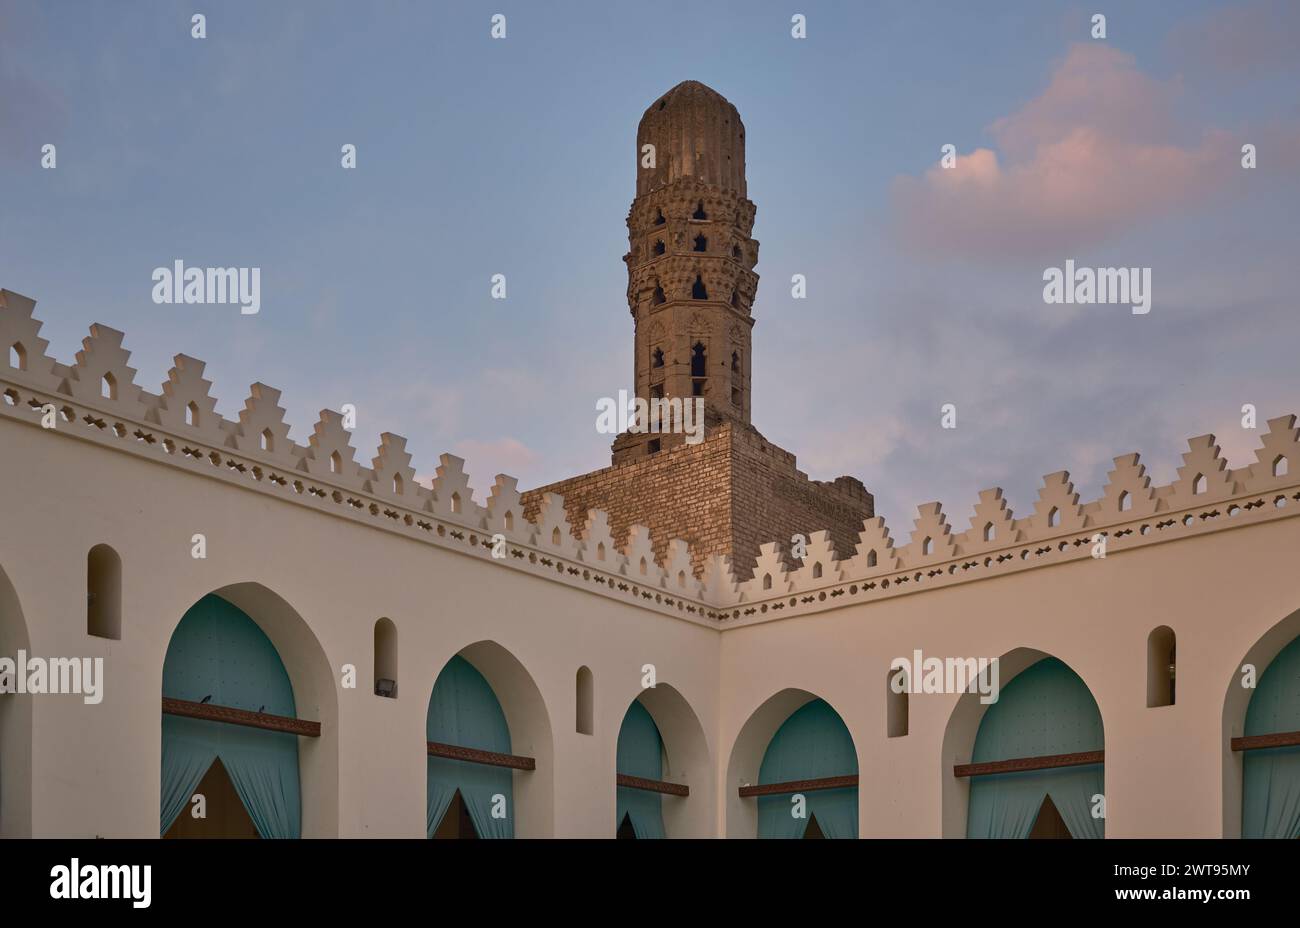 La mosquée al-Hakim, al-Anwar, est une mosquée historique du Caire, en Égypte, nommée d'après Al-Hakim bi-Amr Allah, sixième calife fatimide et 16e Imam Ismaili. Banque D'Images